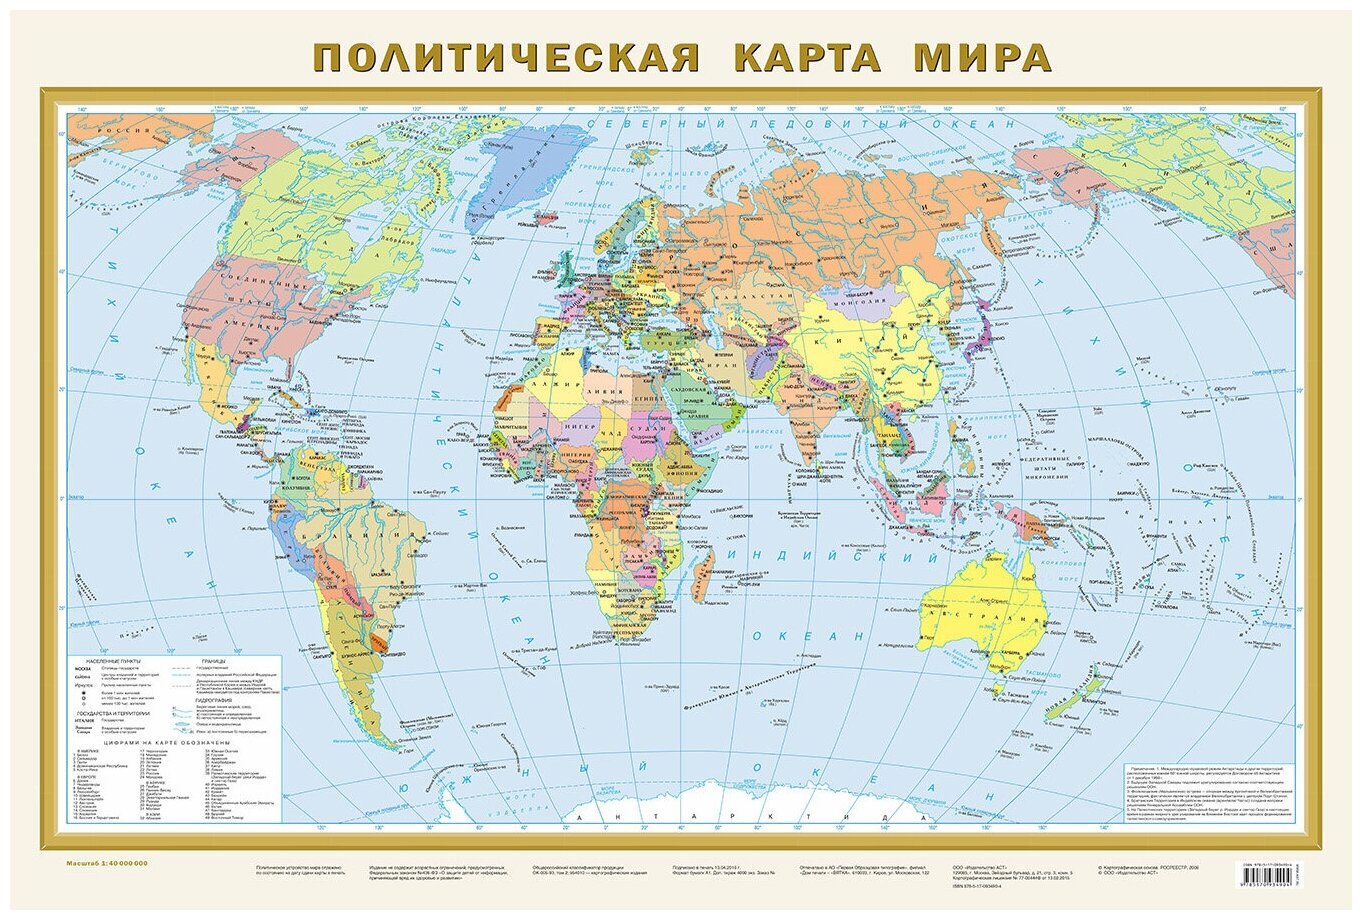 Фотообои Уютная стена "Политическая карта мира на русском языке" 400х270 см Бесшовные Премиум (единым полотном)